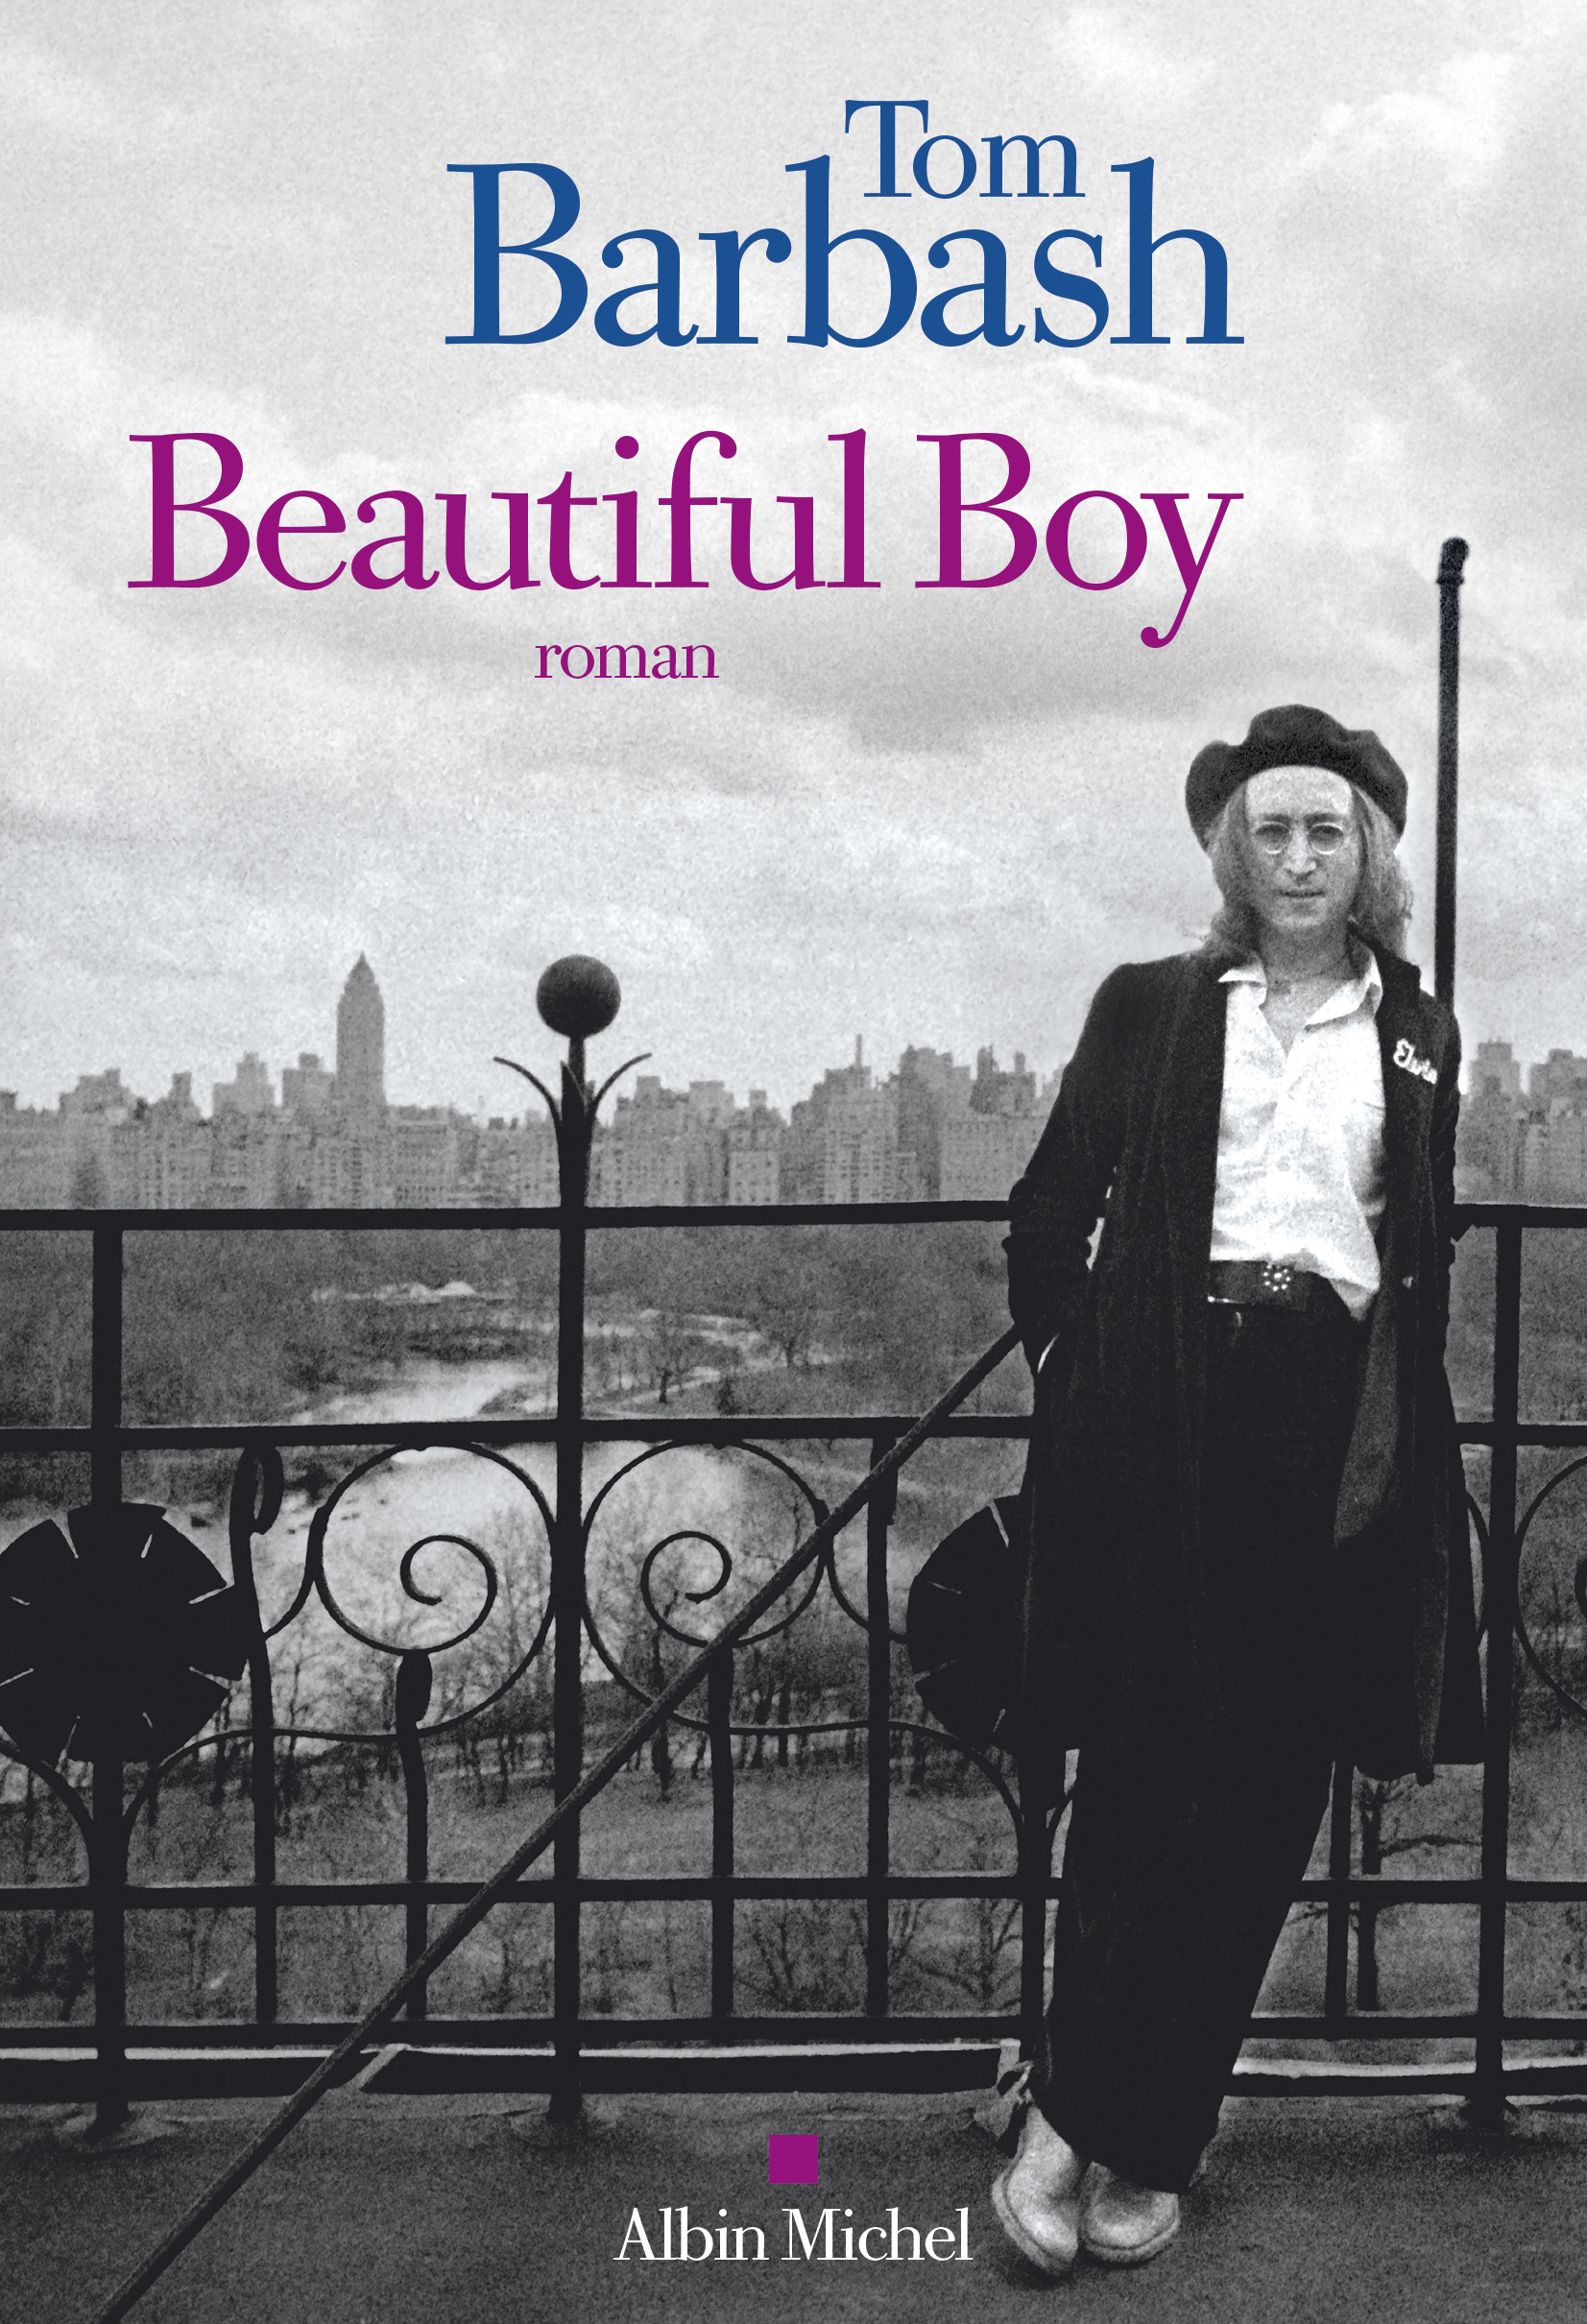 Couverture du livre Beautiful boy